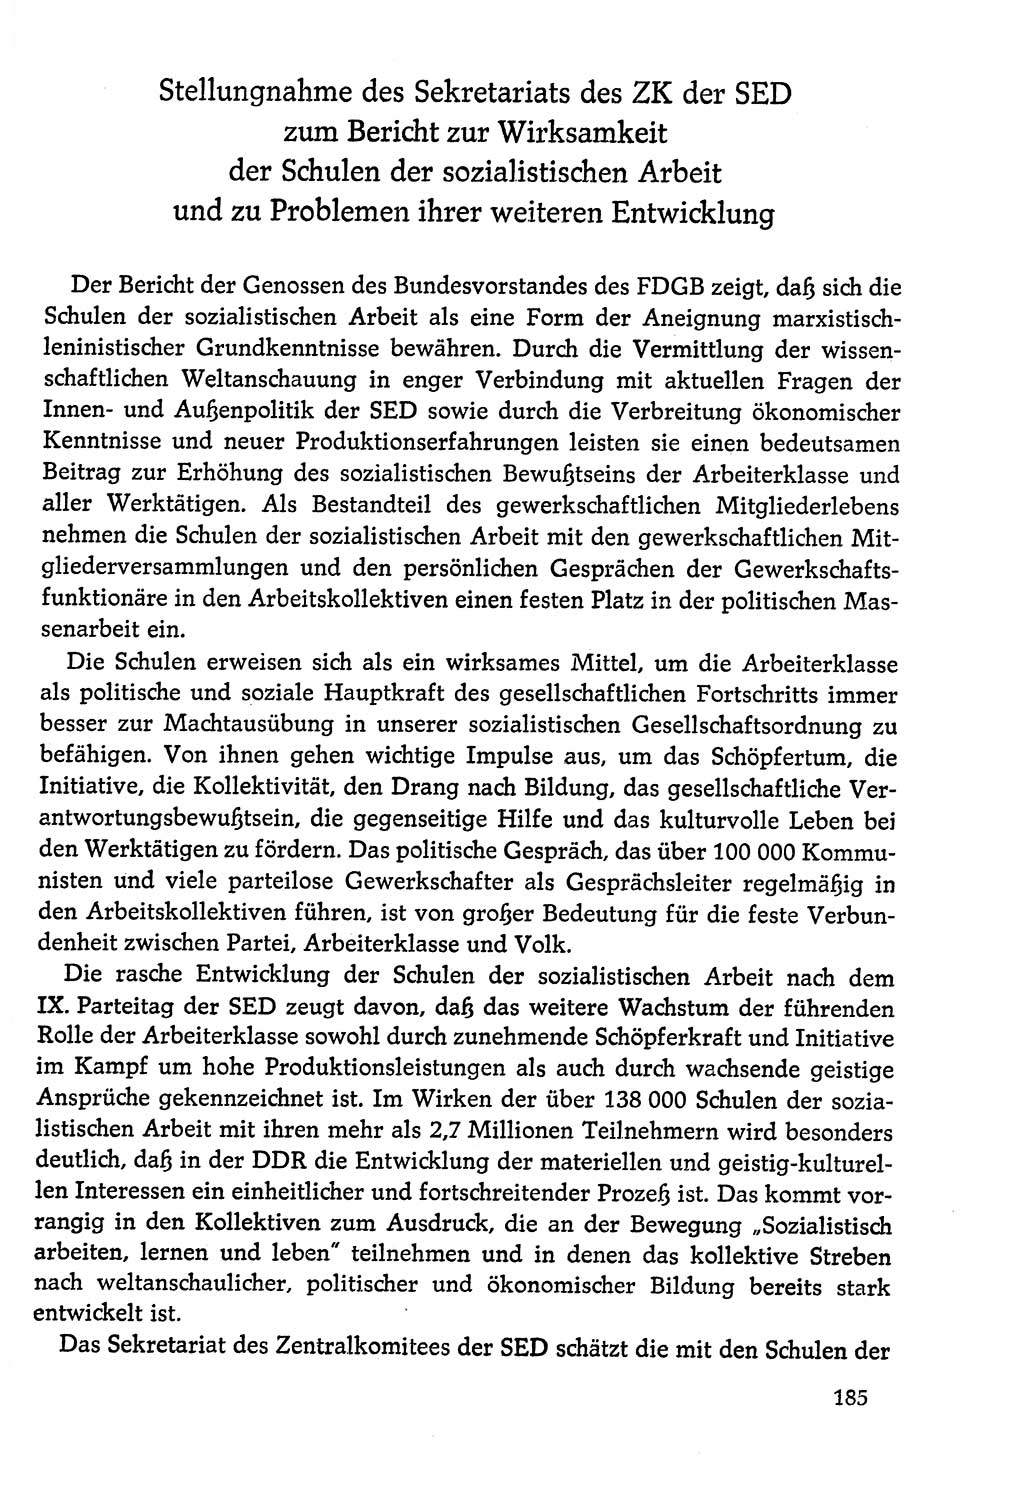 Dokumente der Sozialistischen Einheitspartei Deutschlands (SED) [Deutsche Demokratische Republik (DDR)] 1978-1979, Seite 185 (Dok. SED DDR 1978-1979, S. 185)